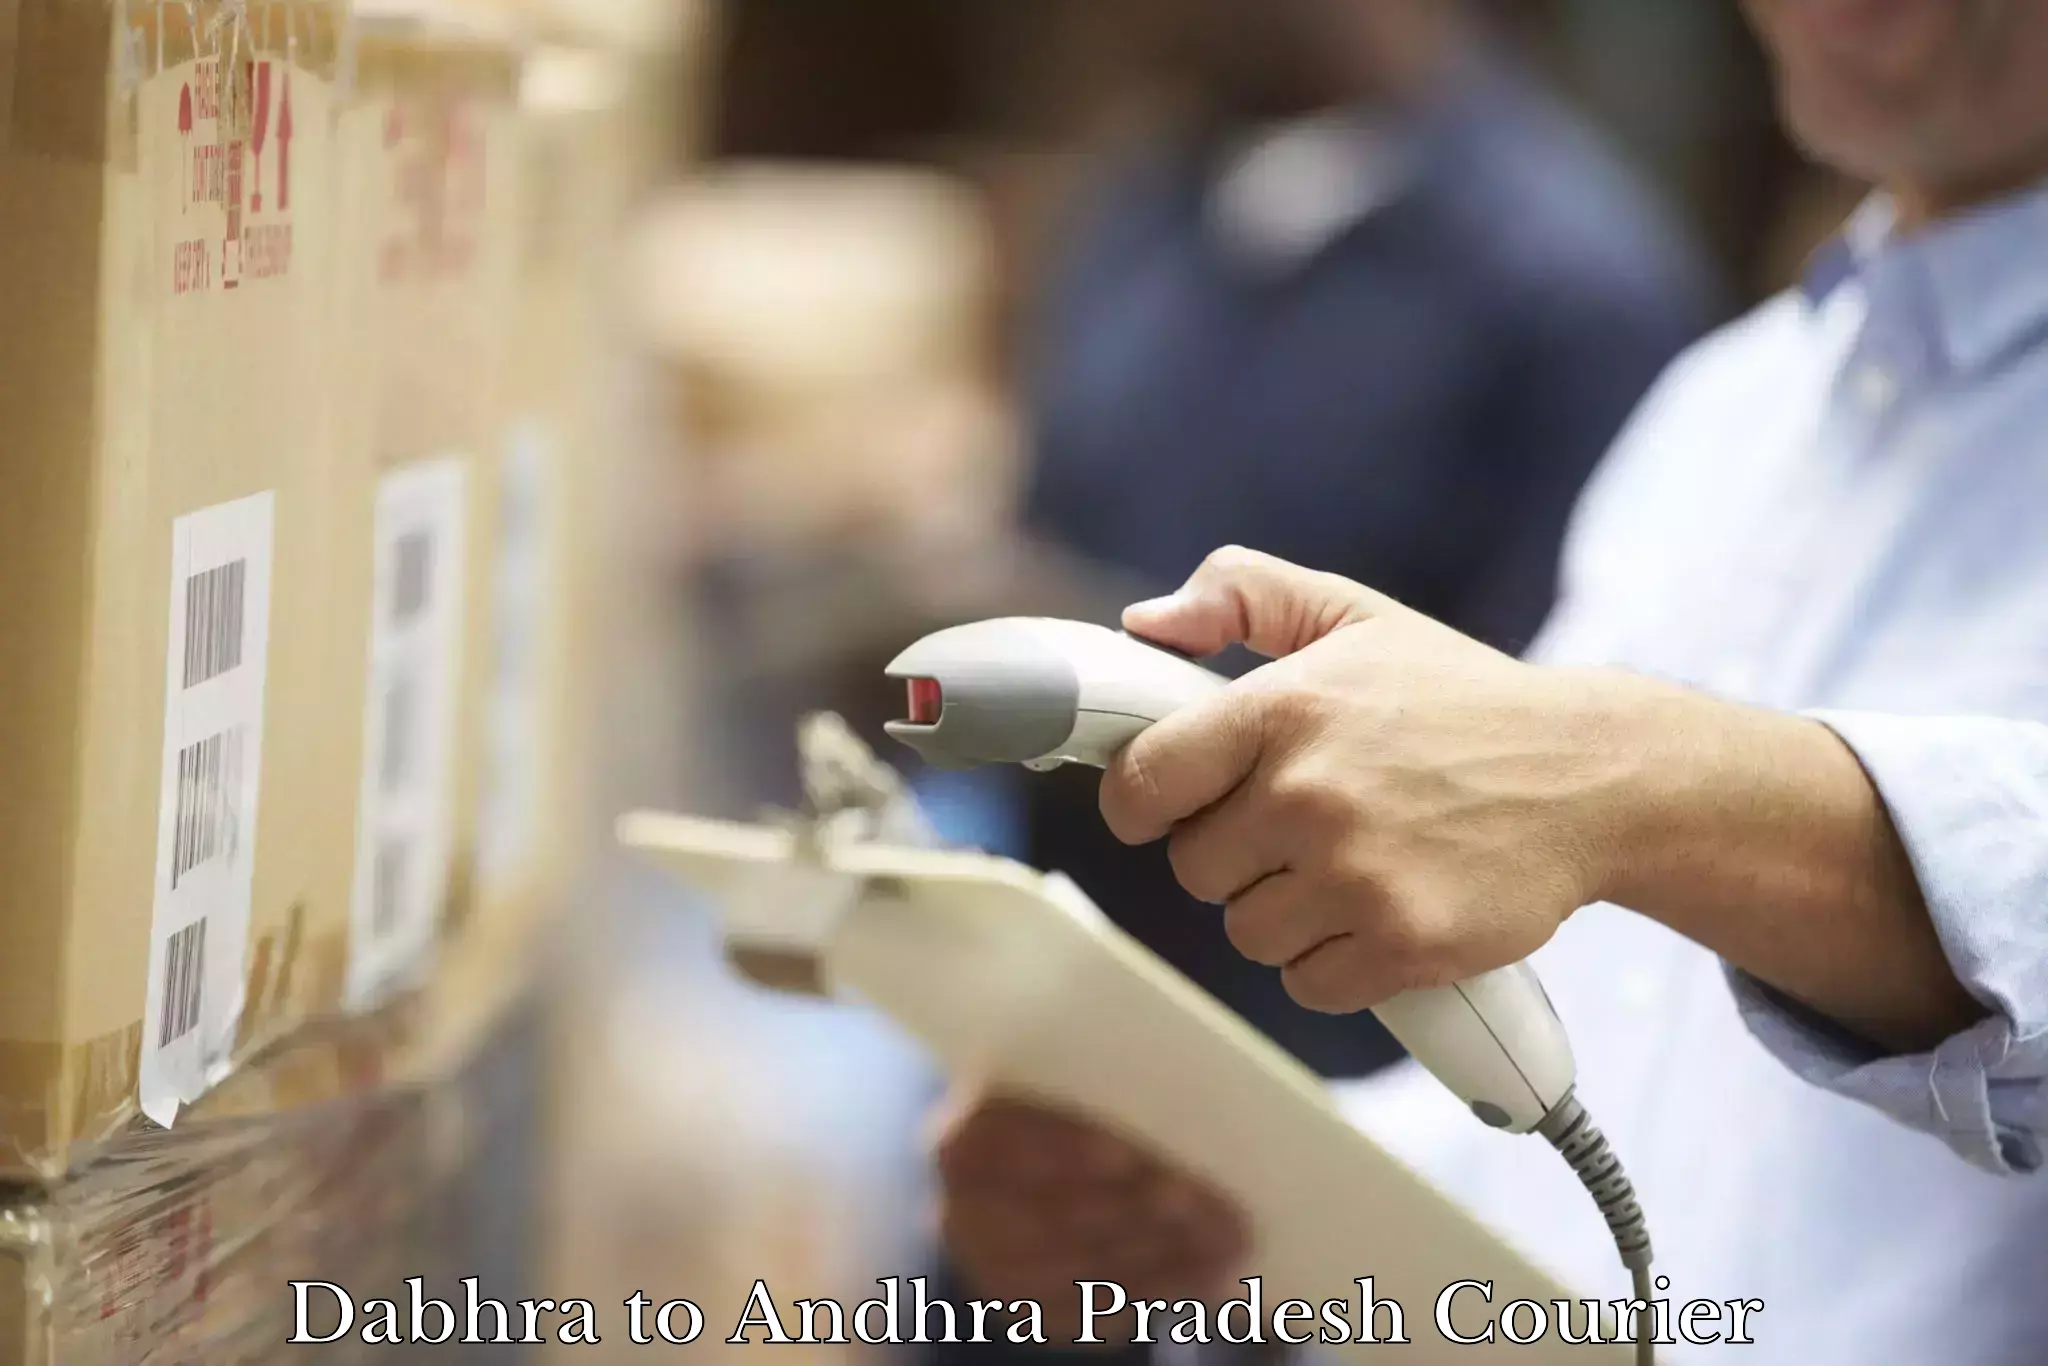 Courier service comparison Dabhra to Chitrada